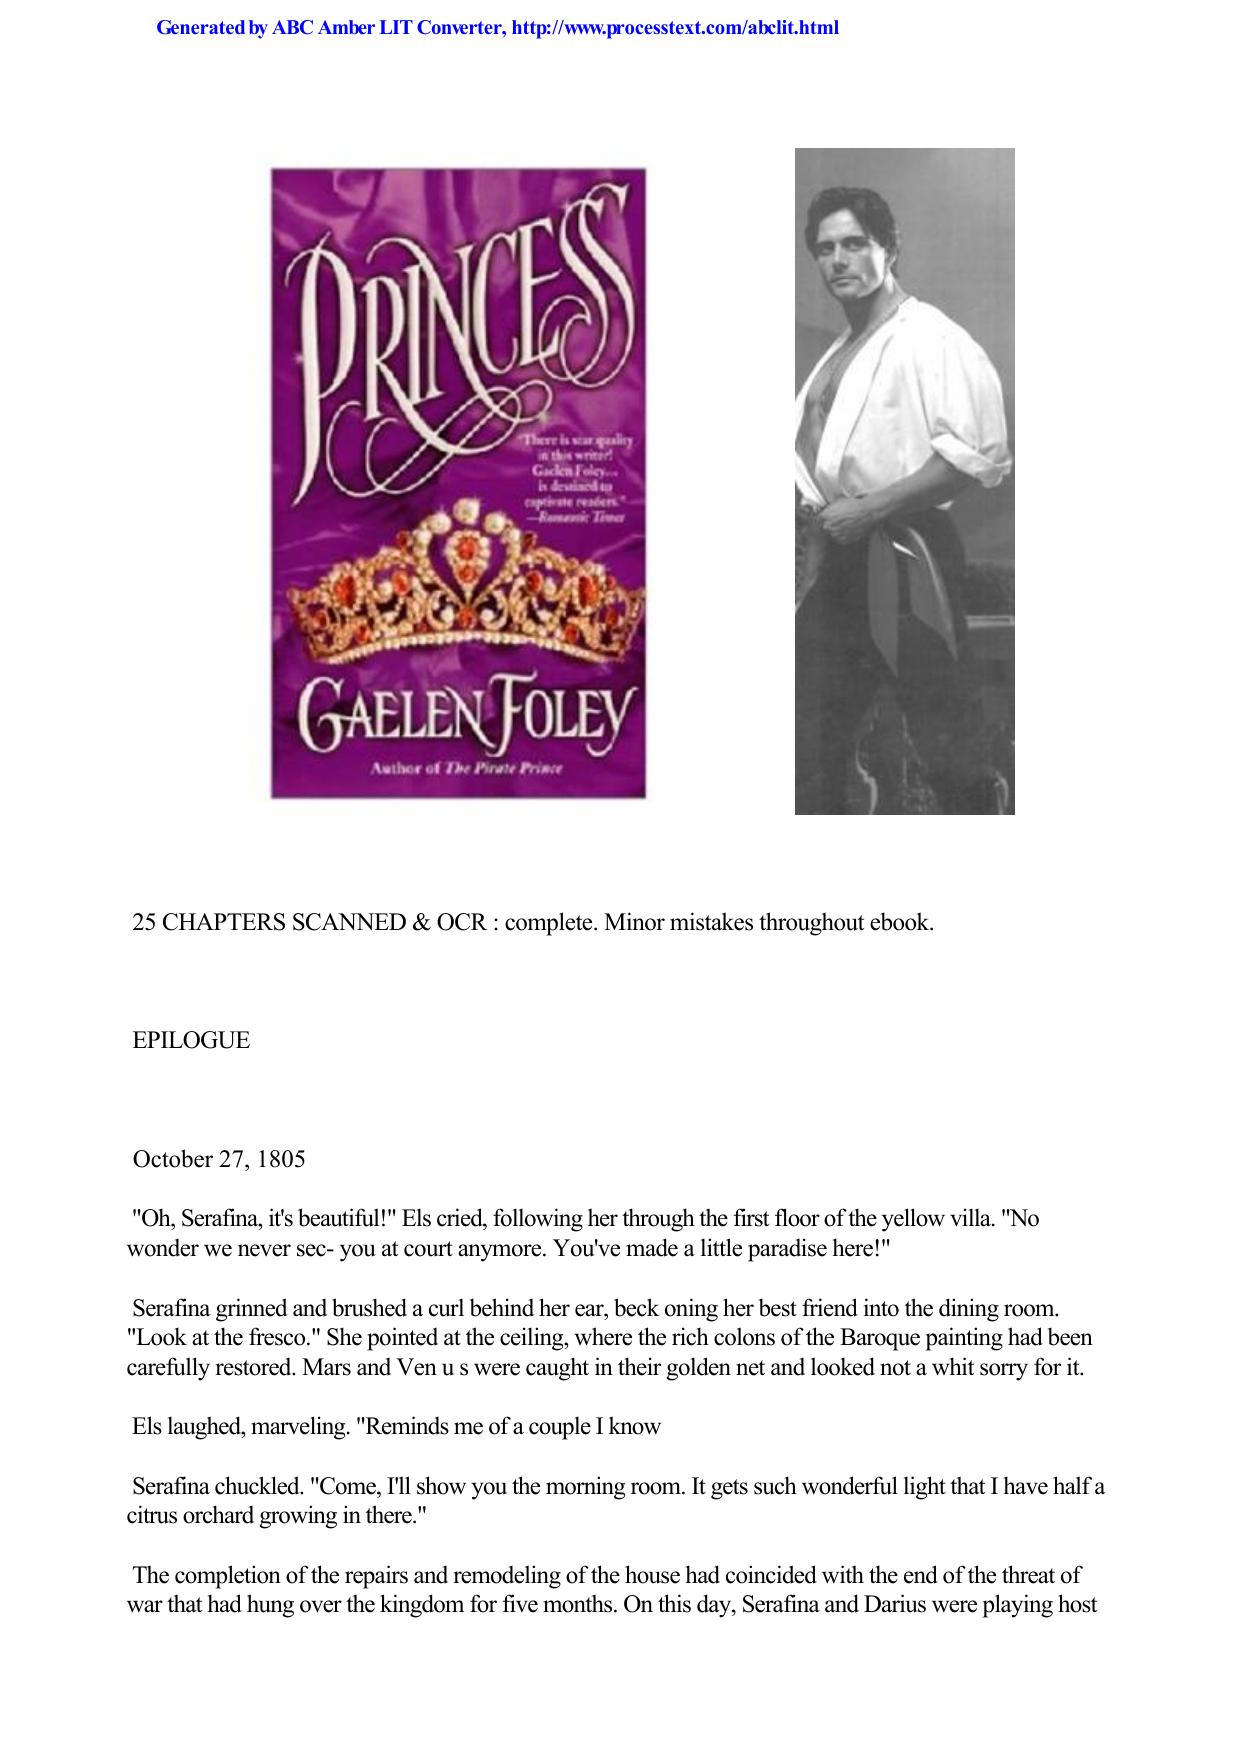 Princess by Foley Gaelen